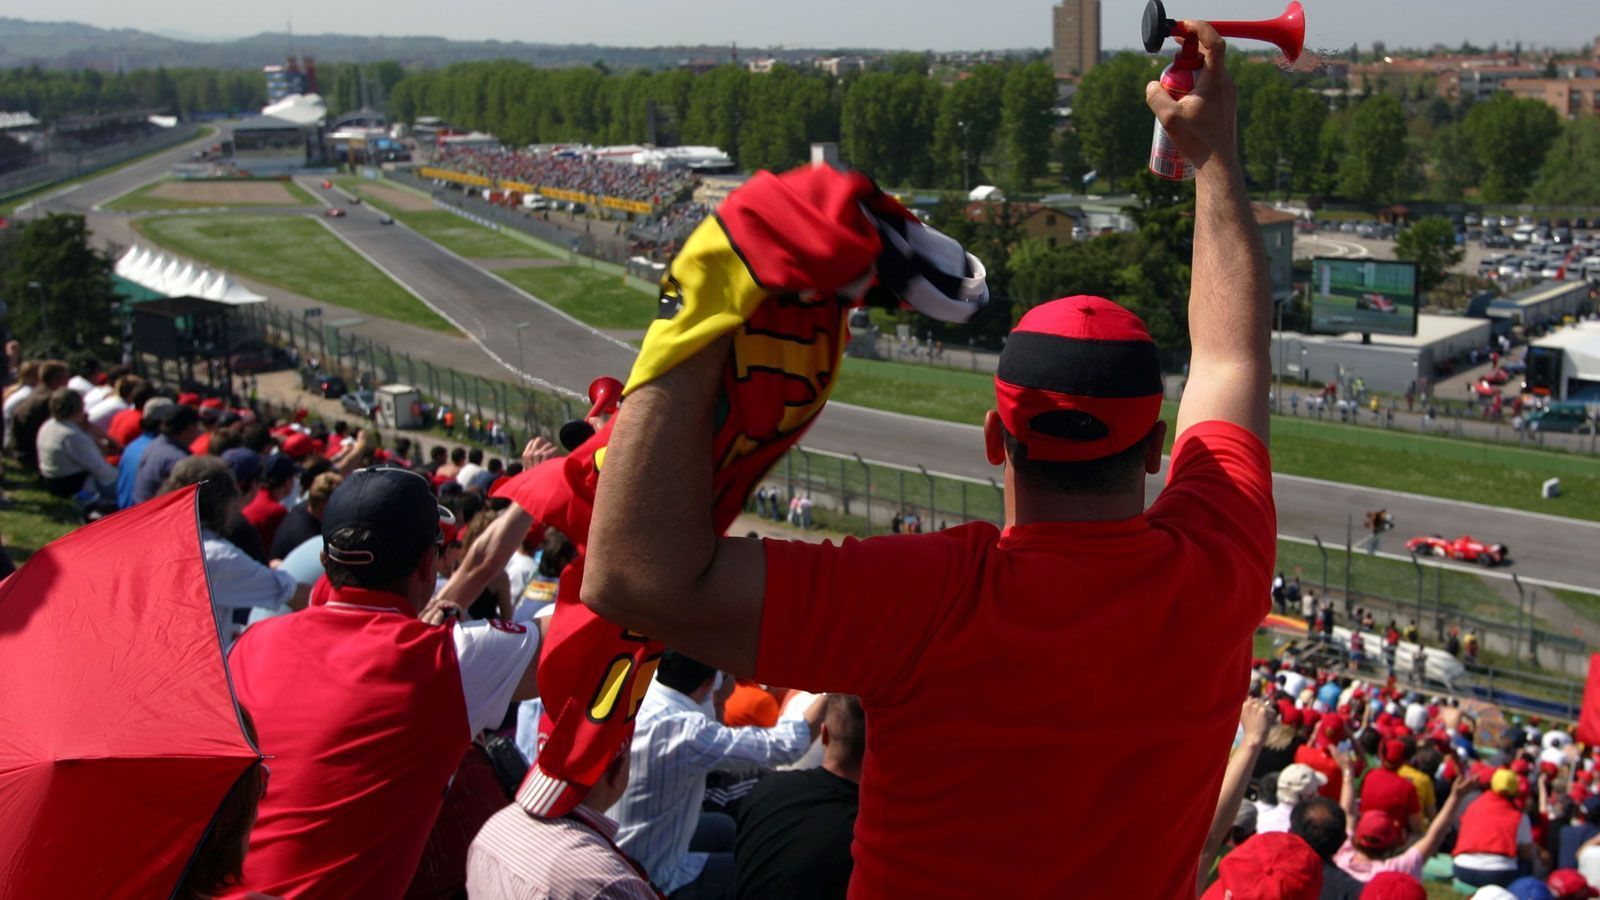 
                <strong>Heimspiel für Ferrari </strong><br>
                Bei einer Distanz von gerade einmal 80 Kilometern zum Firmensitz in Maranello gilt die Traditionsstrecke neben dem Rennen in Monza als Heimspiel für die Scuderia und ihre Fans. Mit acht Siegen bei 27 Austragungen ist Ferrari auch das erfolgreichste Team in Imola, muss sich diesen Titel allerdings mit dem englischen Williams-Team teilen. Von 1980 bis 2006 war das "Autodromo Internazionale Enzo e Dino Ferrari" jedes Jahr Austragungsort eines Formel-1-Rennens, mit Ausnahme von 1980 dabei stets als Großer Preis von San Marino. 2020 wird das Rennen zum ersten Mal als "Großer Preis der Emilia-Romagna" ausgetragen.
              